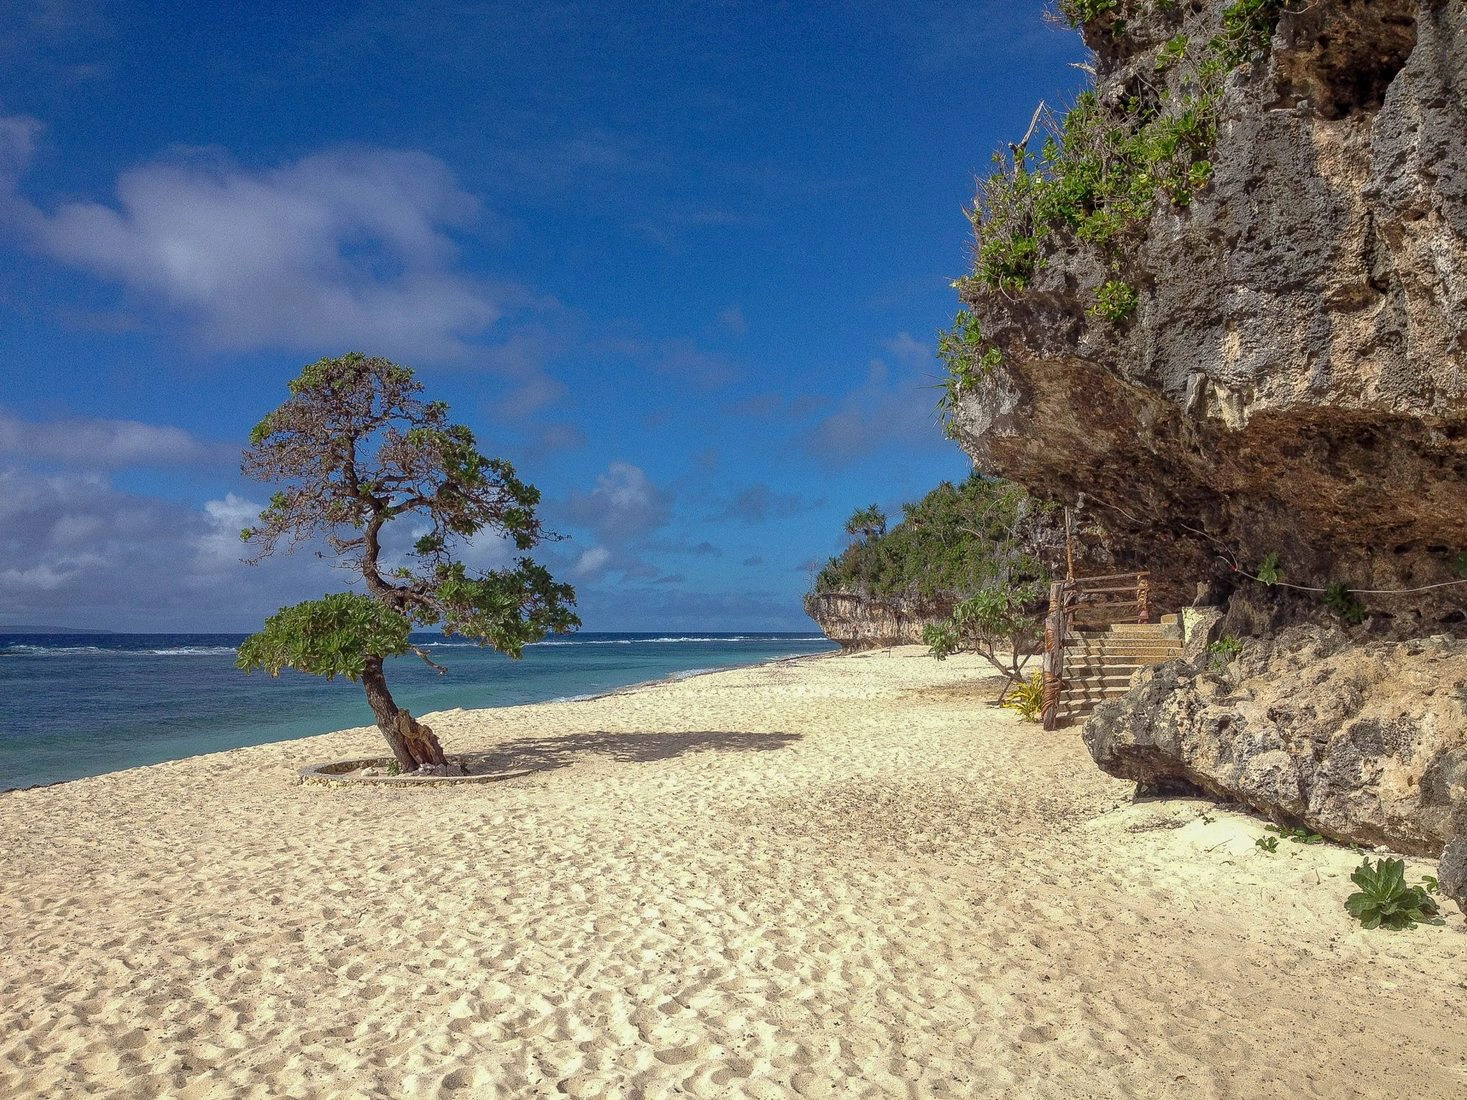  Oholei  strand - Tonga